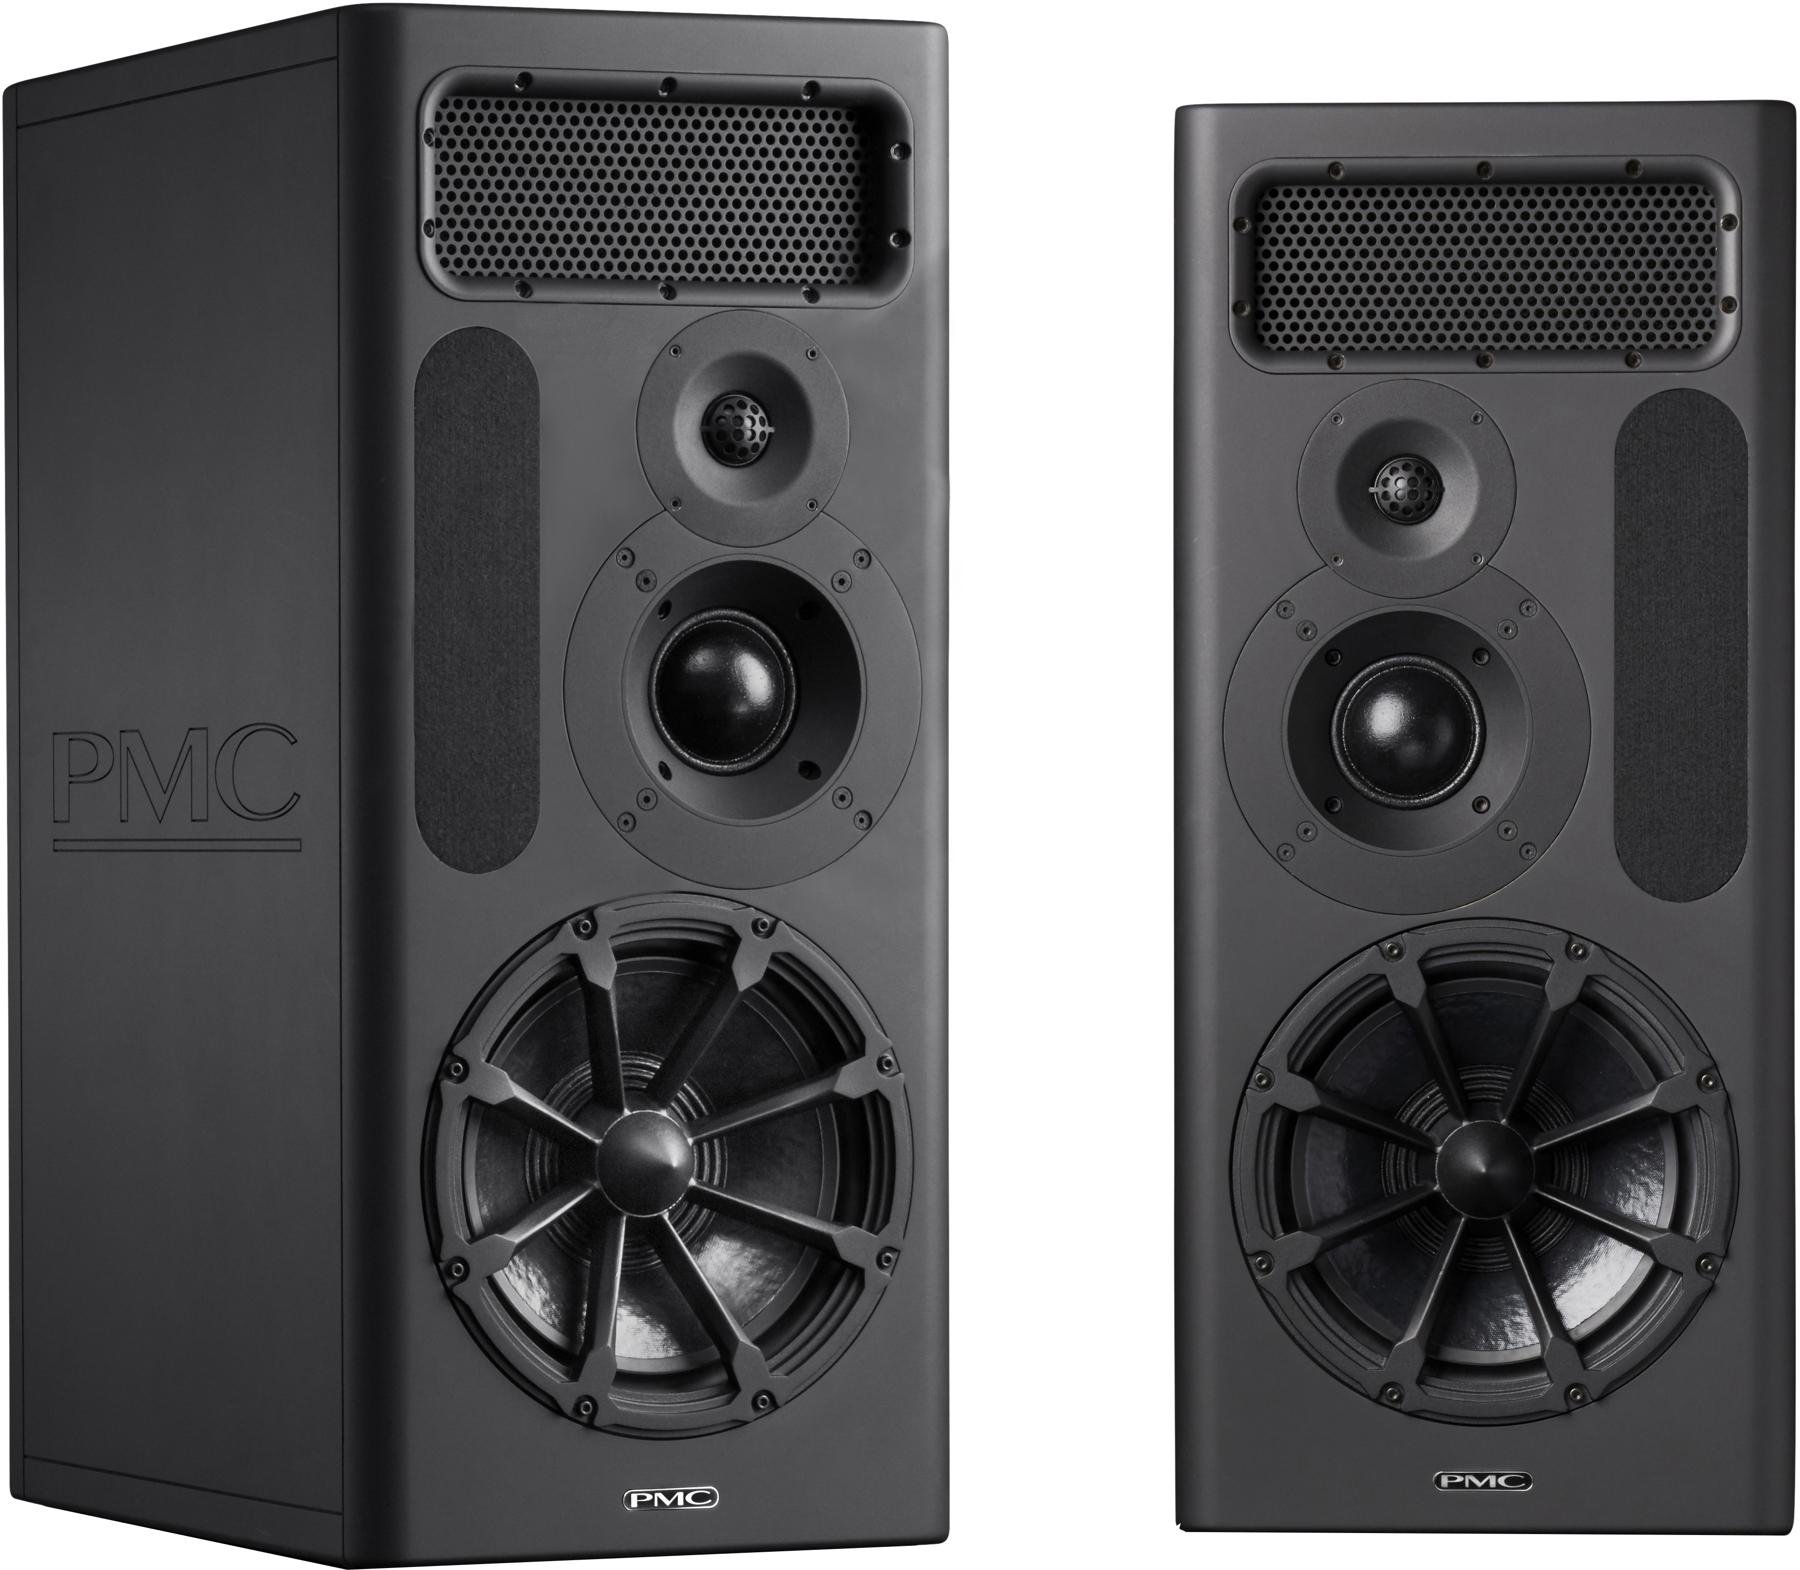 pmc speakers price